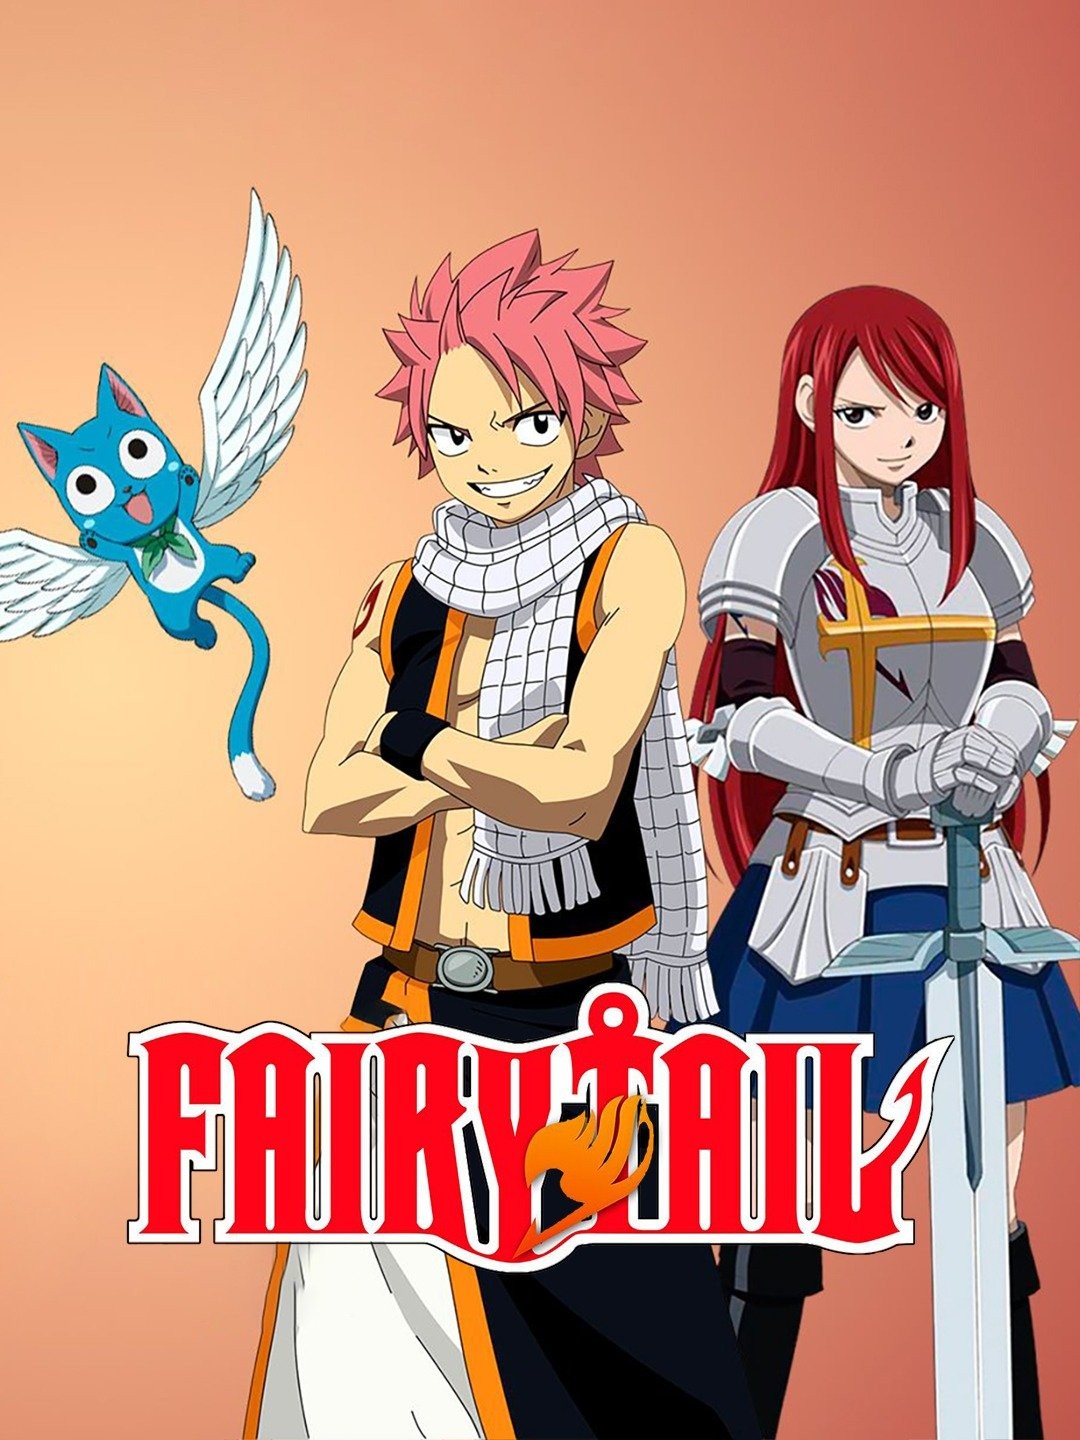 Fairy Tail (season 7) - Wikipedia